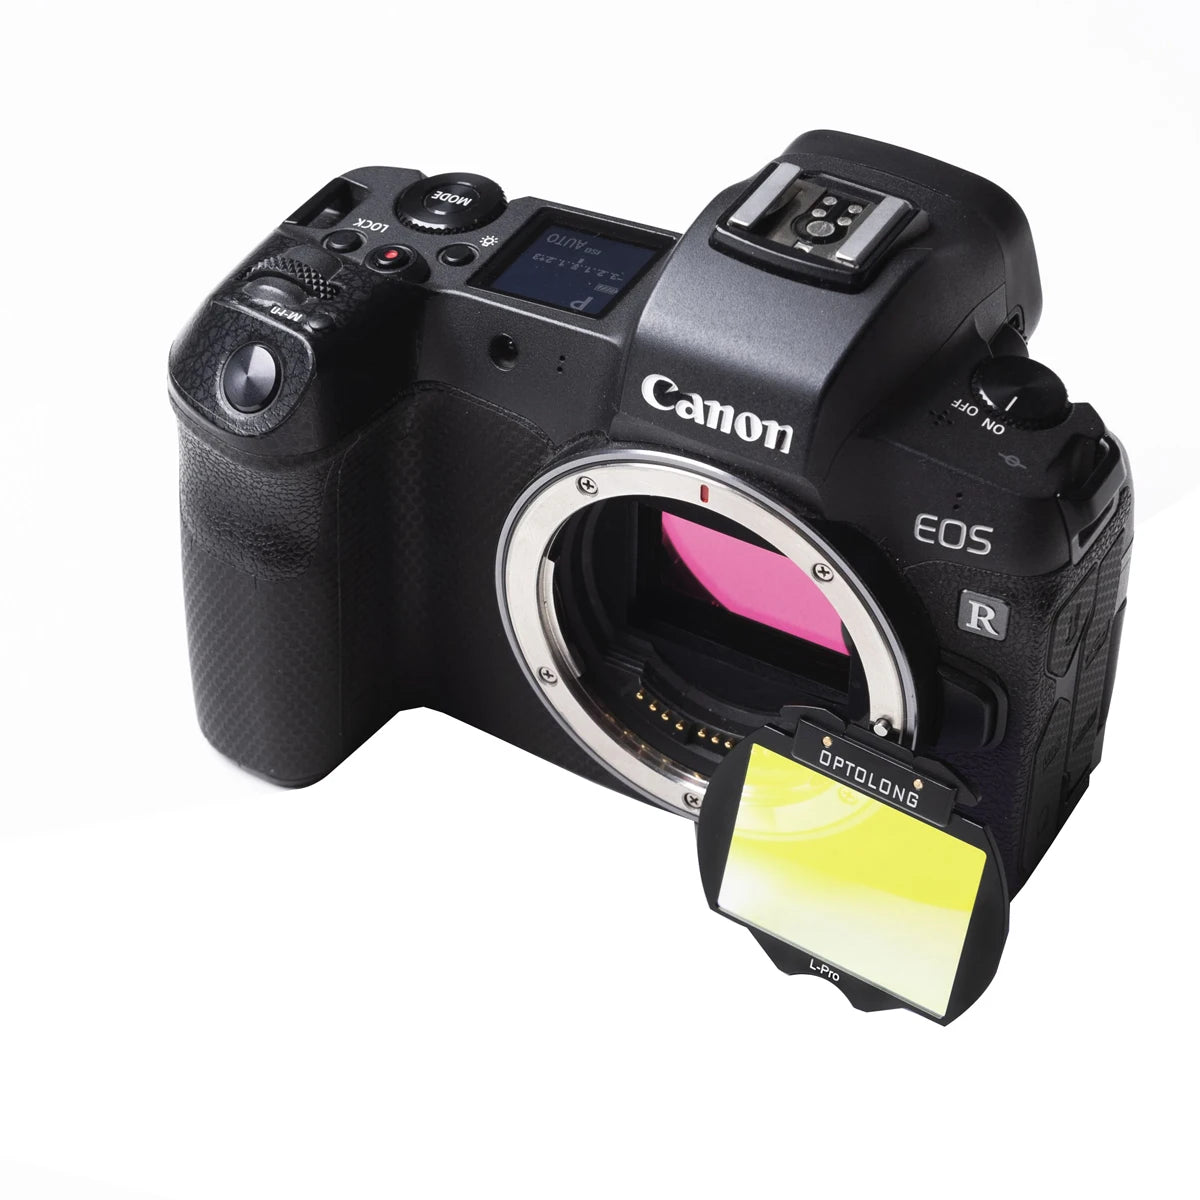 Optolong L Pro EOS R Clip Filter Canon Full Frame EOS-R Cameras